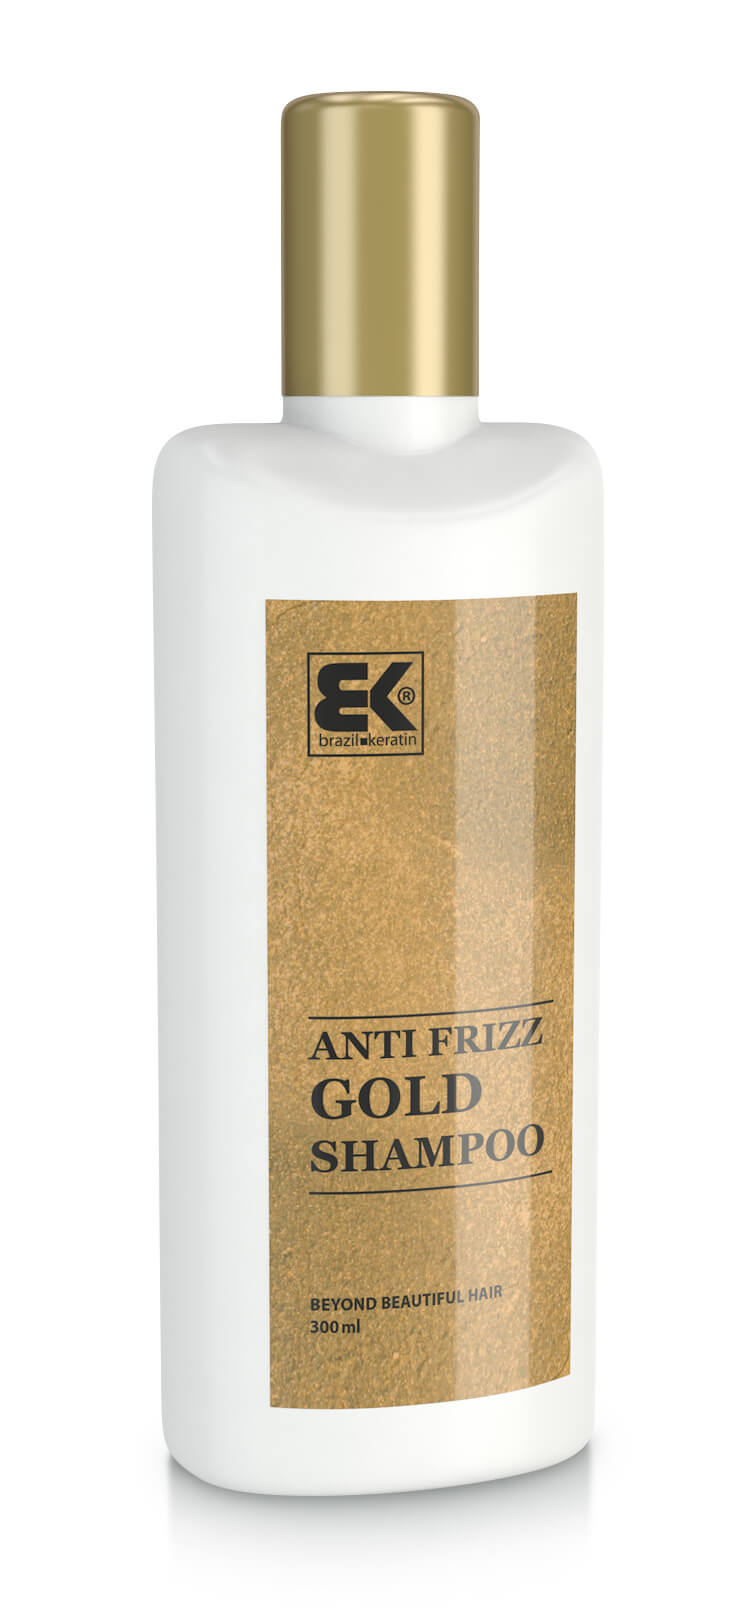 Brazil Keratin Zlatý šampon pro poškozené vlasy (Shampoo Anti-Frizz Gold) 300 ml